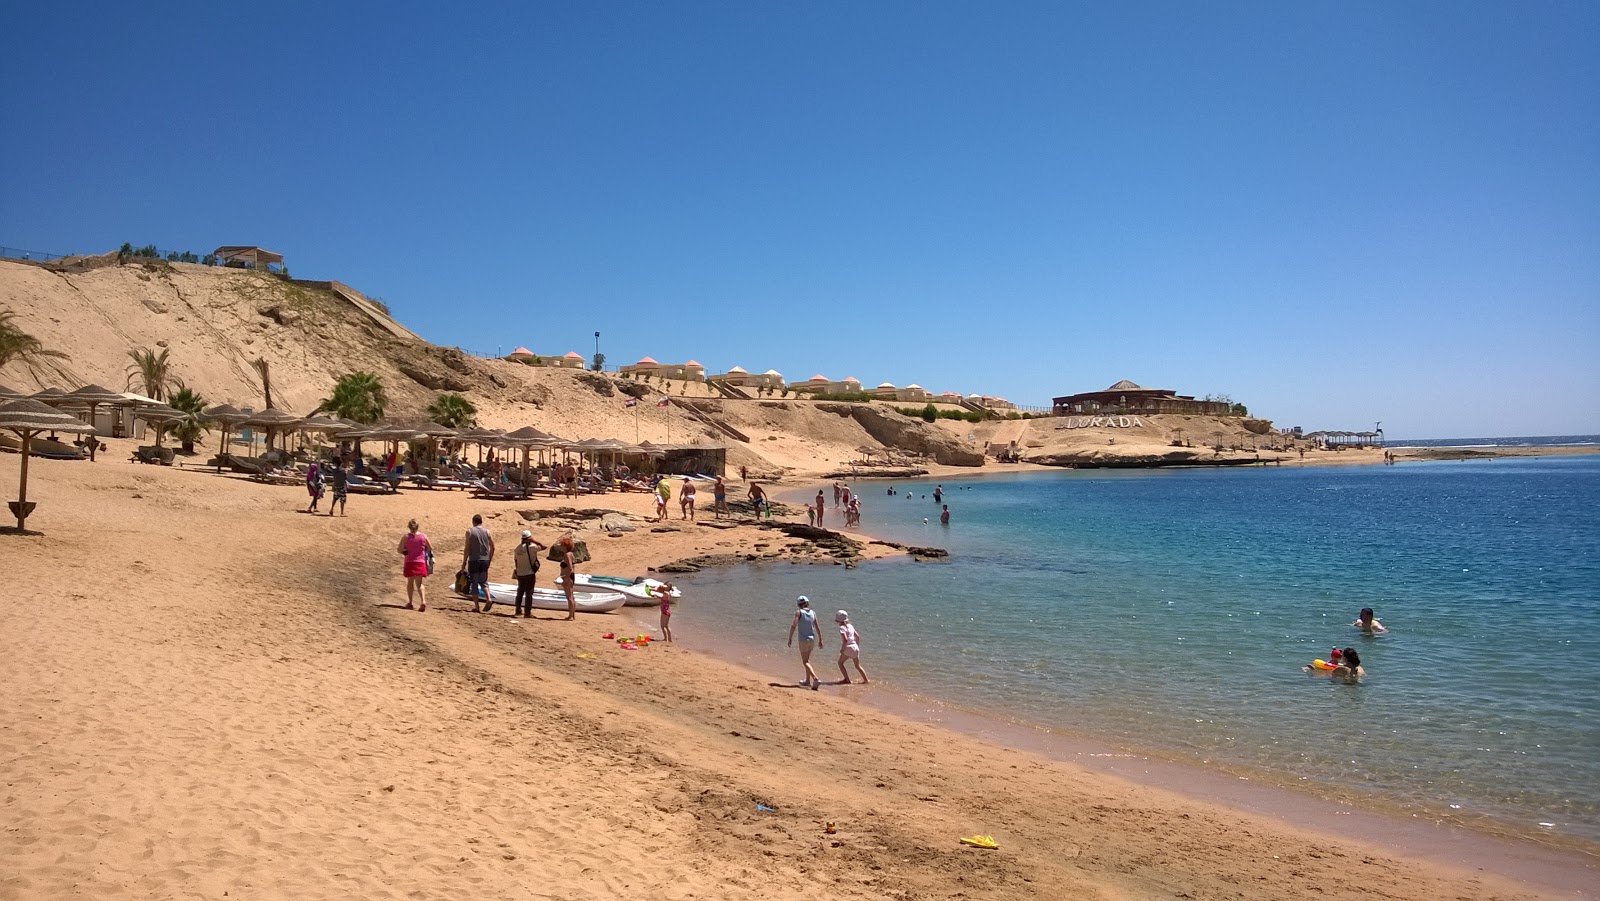 Foto de Playa Al Nabila Grand Bay Makadi - lugar popular entre los conocedores del relax